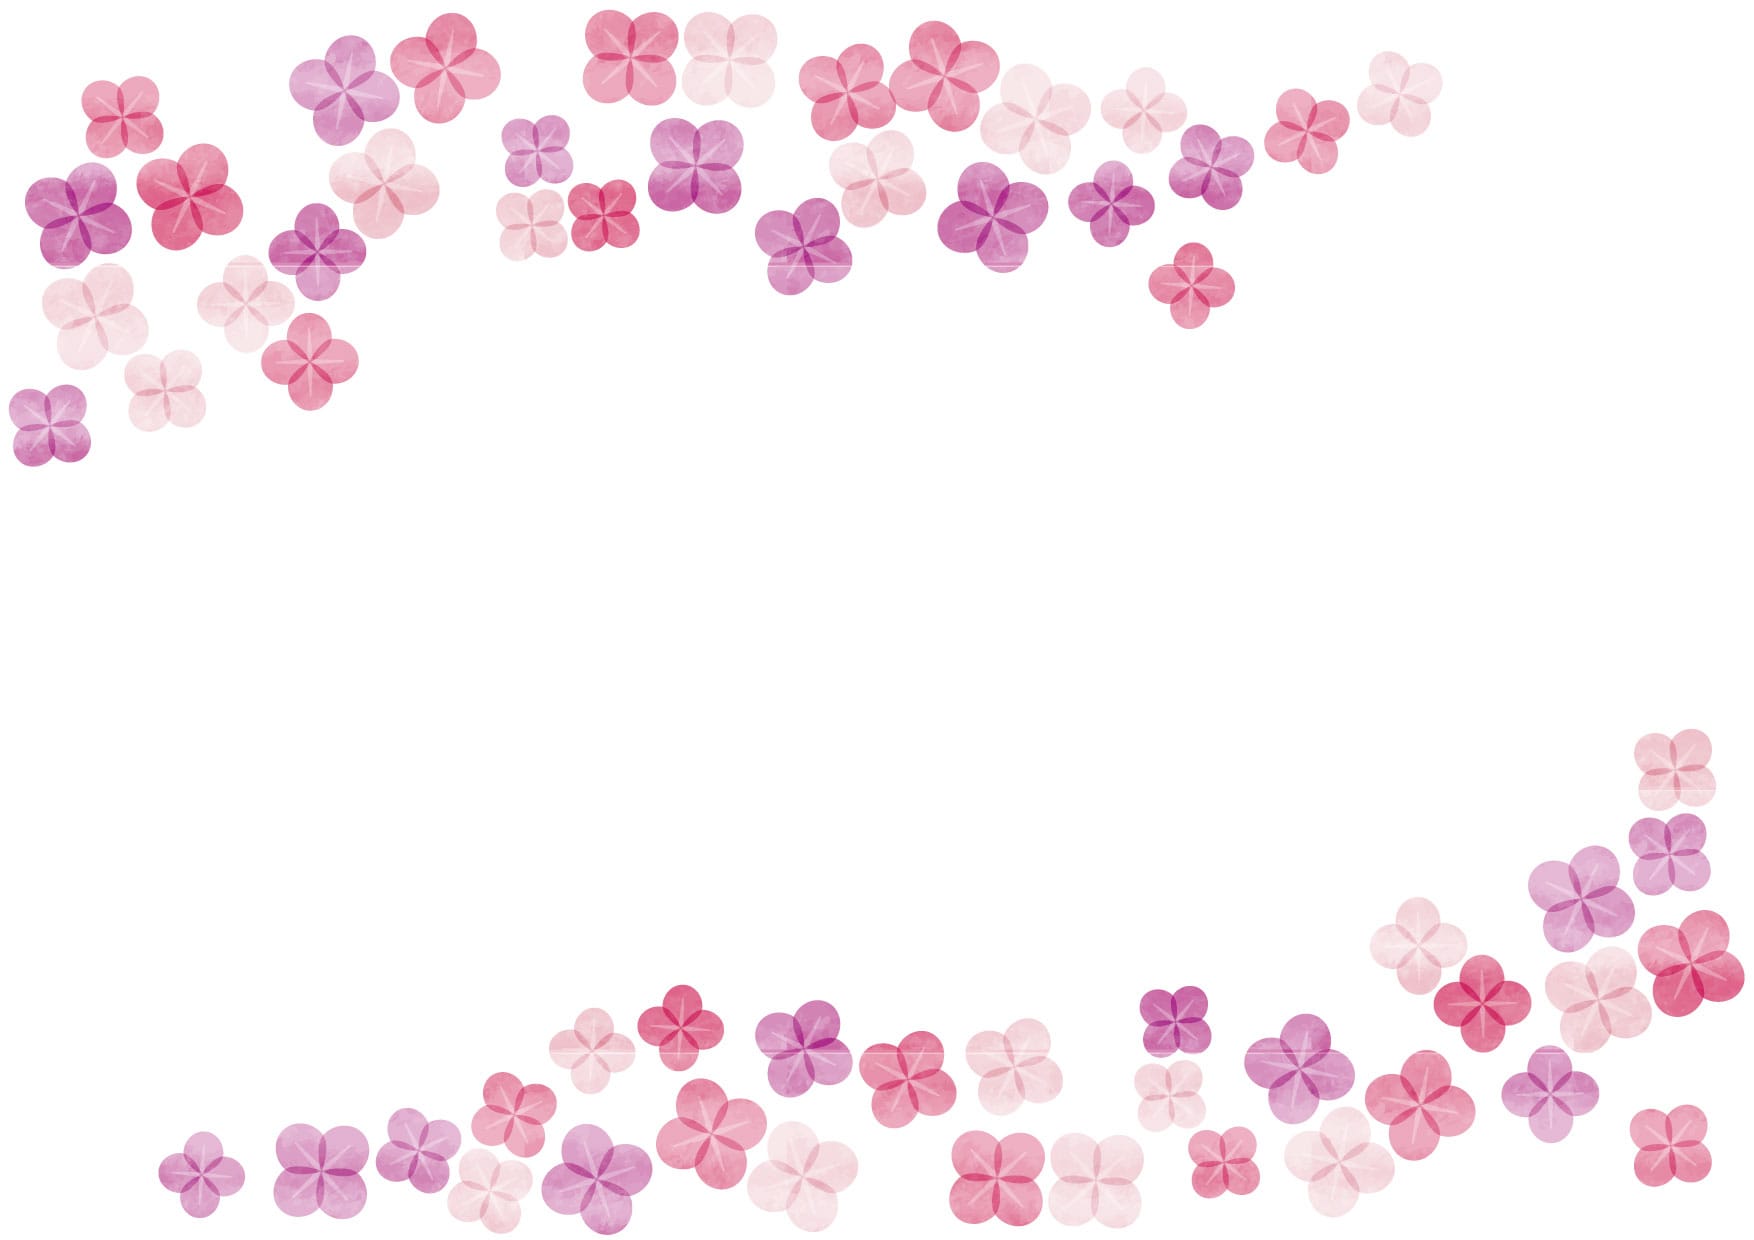 可愛いイラスト無料 あじさい ピンク色 水彩 背景 Free Illustration Hydrangea Pink Watercolor Background 公式 イラストダウンロード